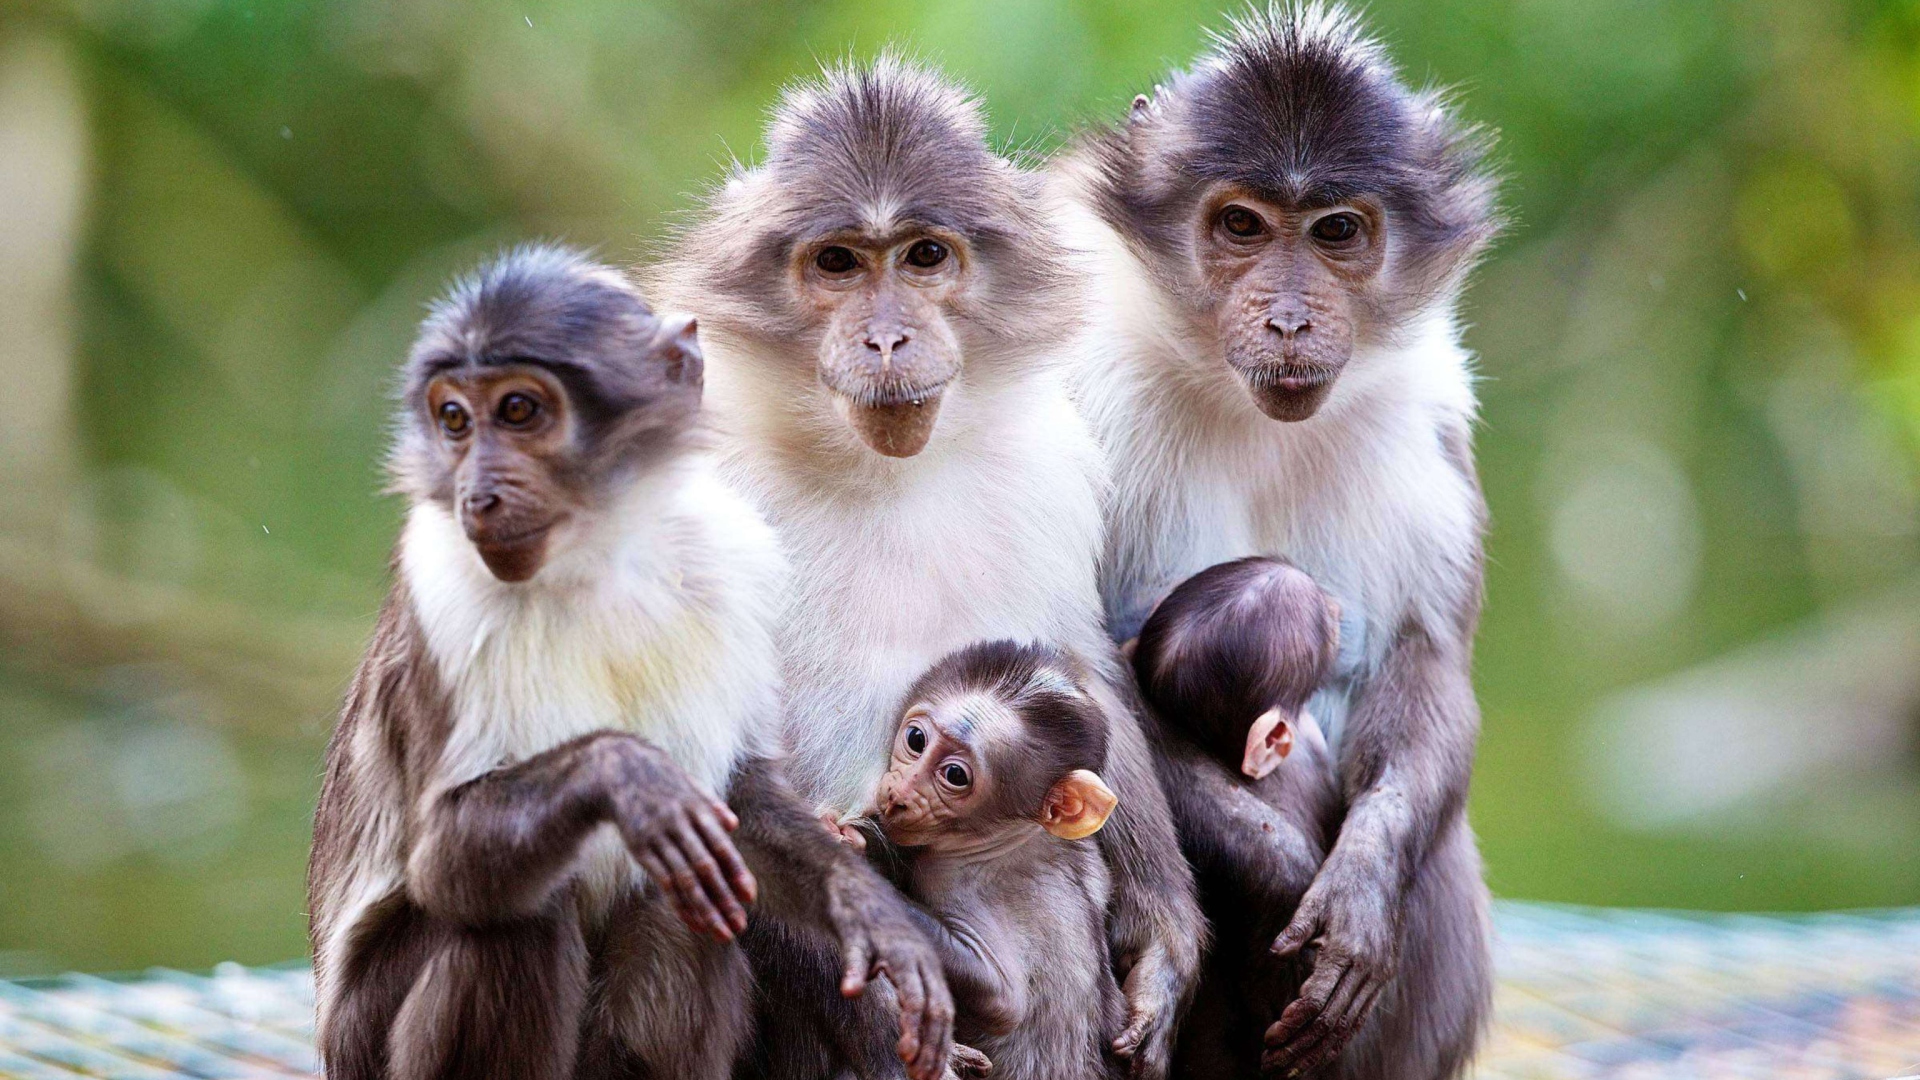 Sfondi Funny Monkeys With Their Babies 1920x1080